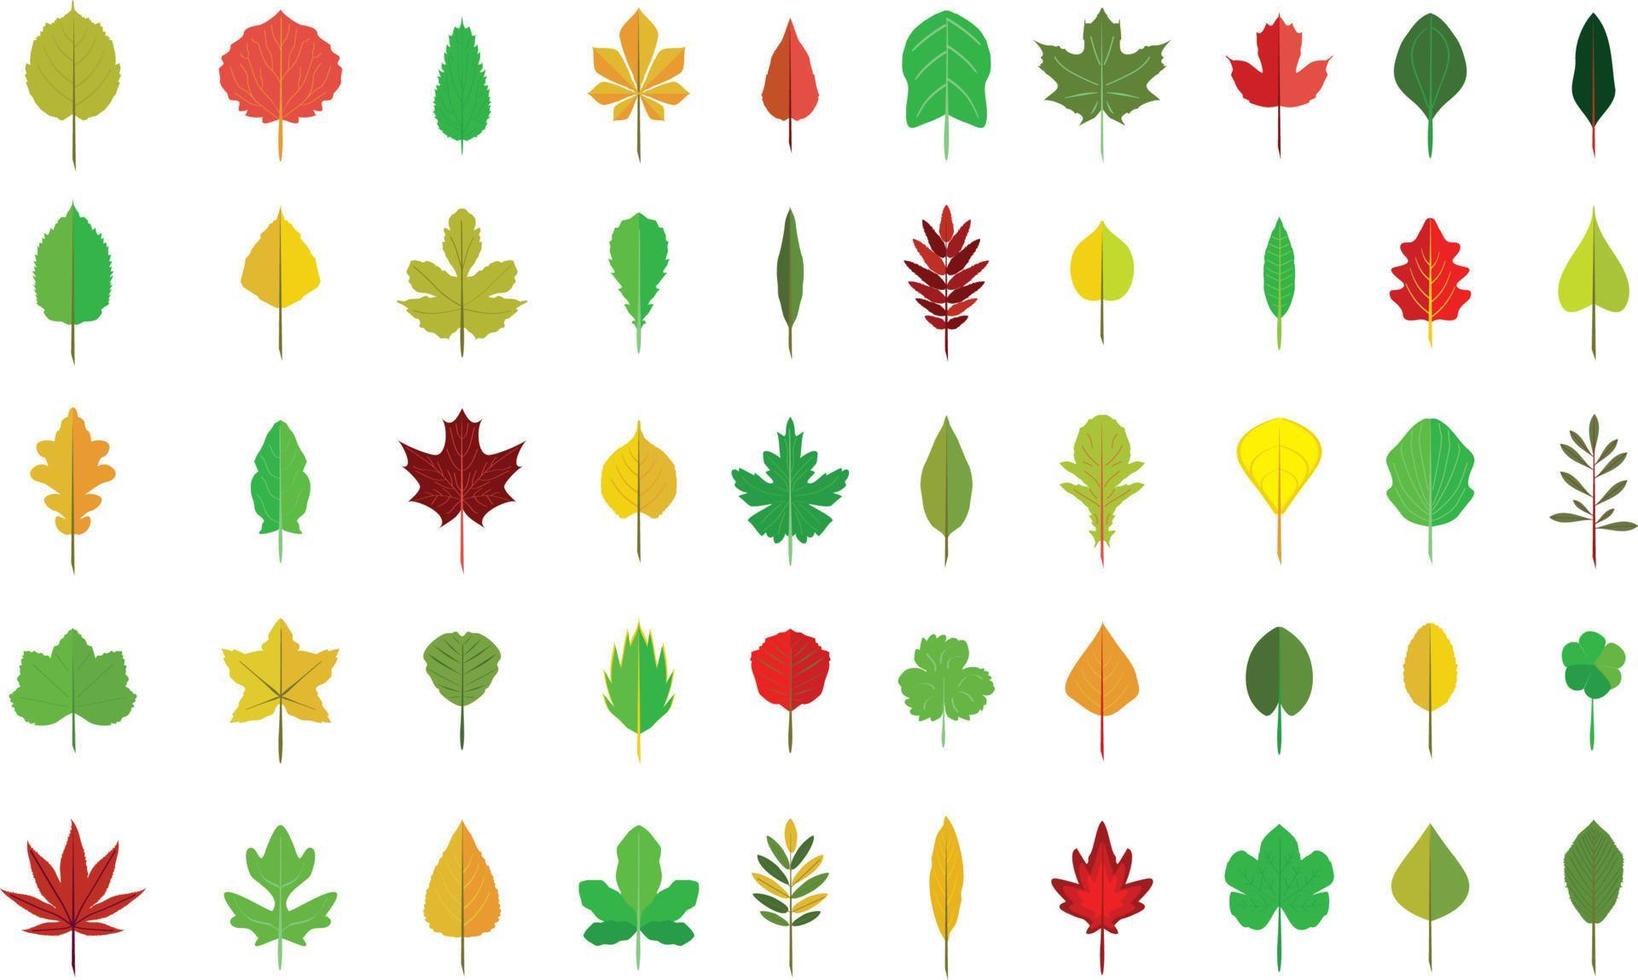 herfstbladeren collectie vector